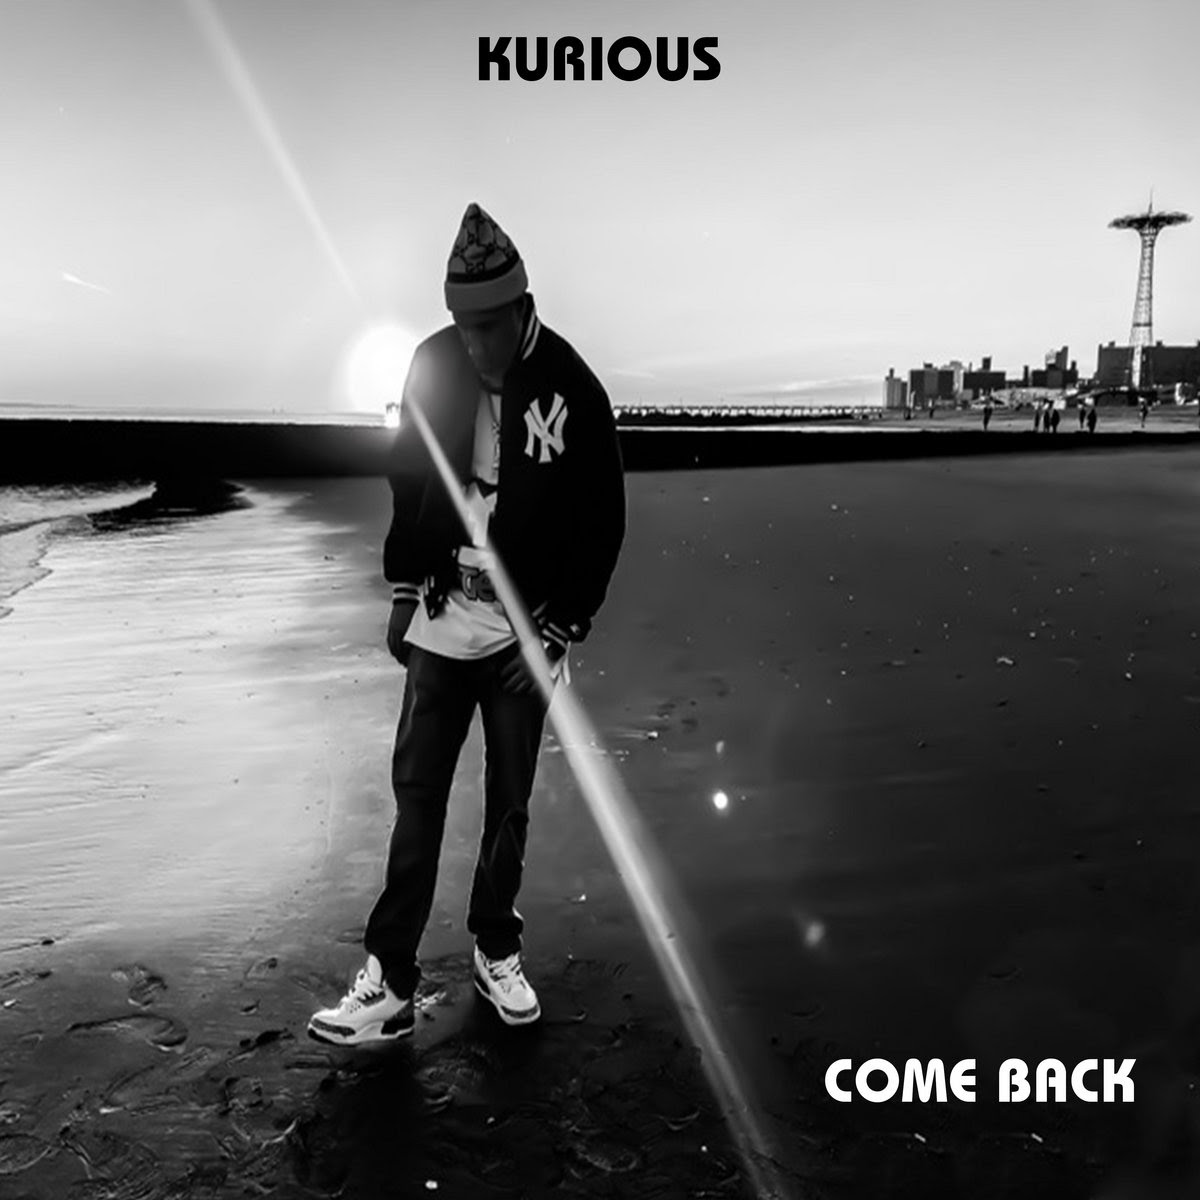 Come_back_kurious